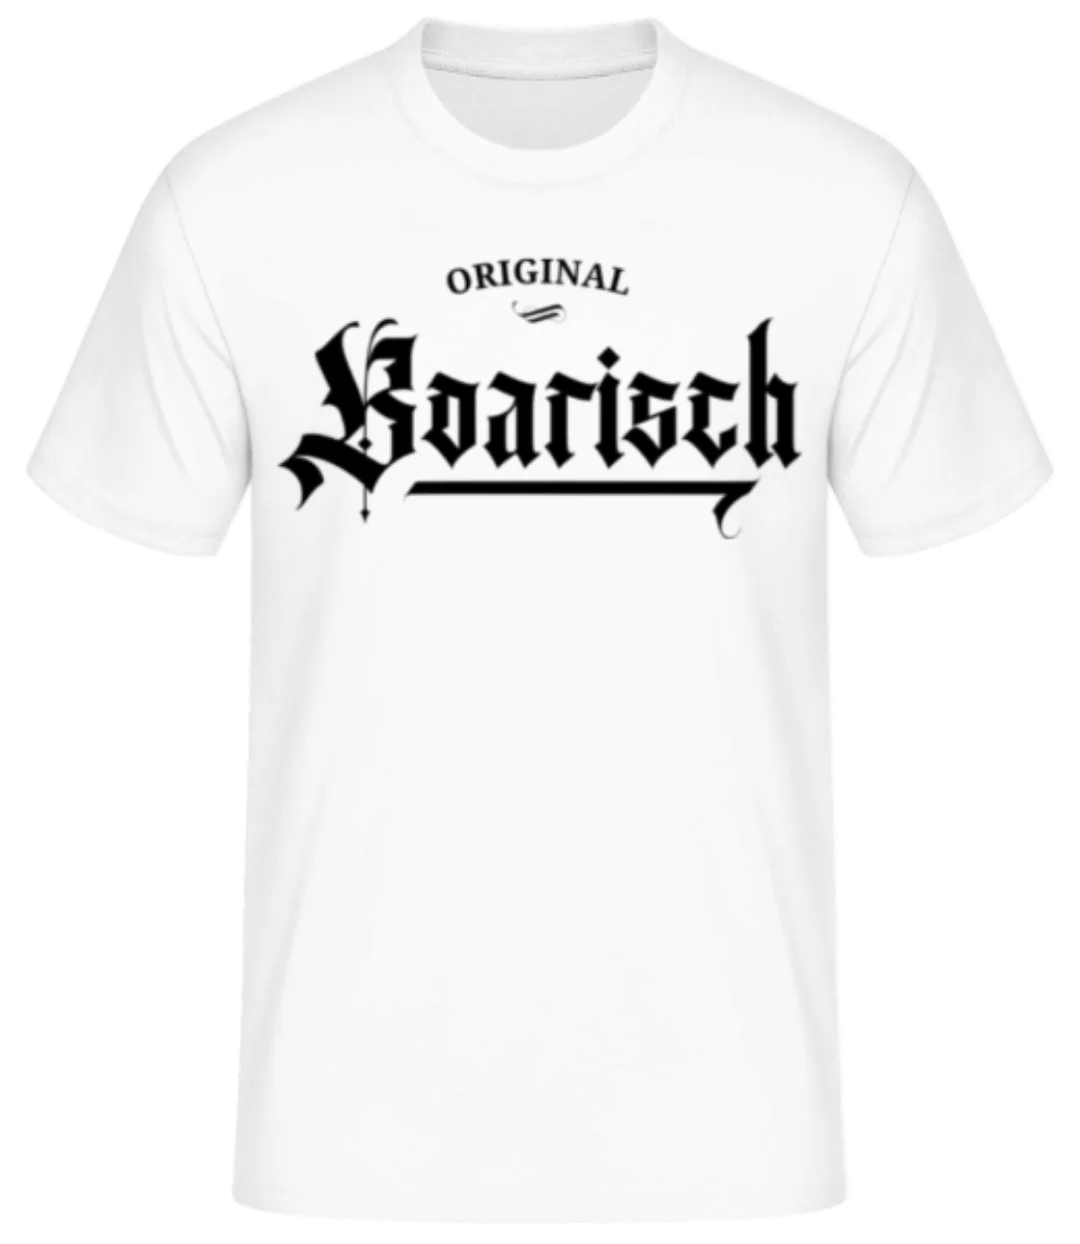 Original Boarisch · Männer Basic T-Shirt günstig online kaufen